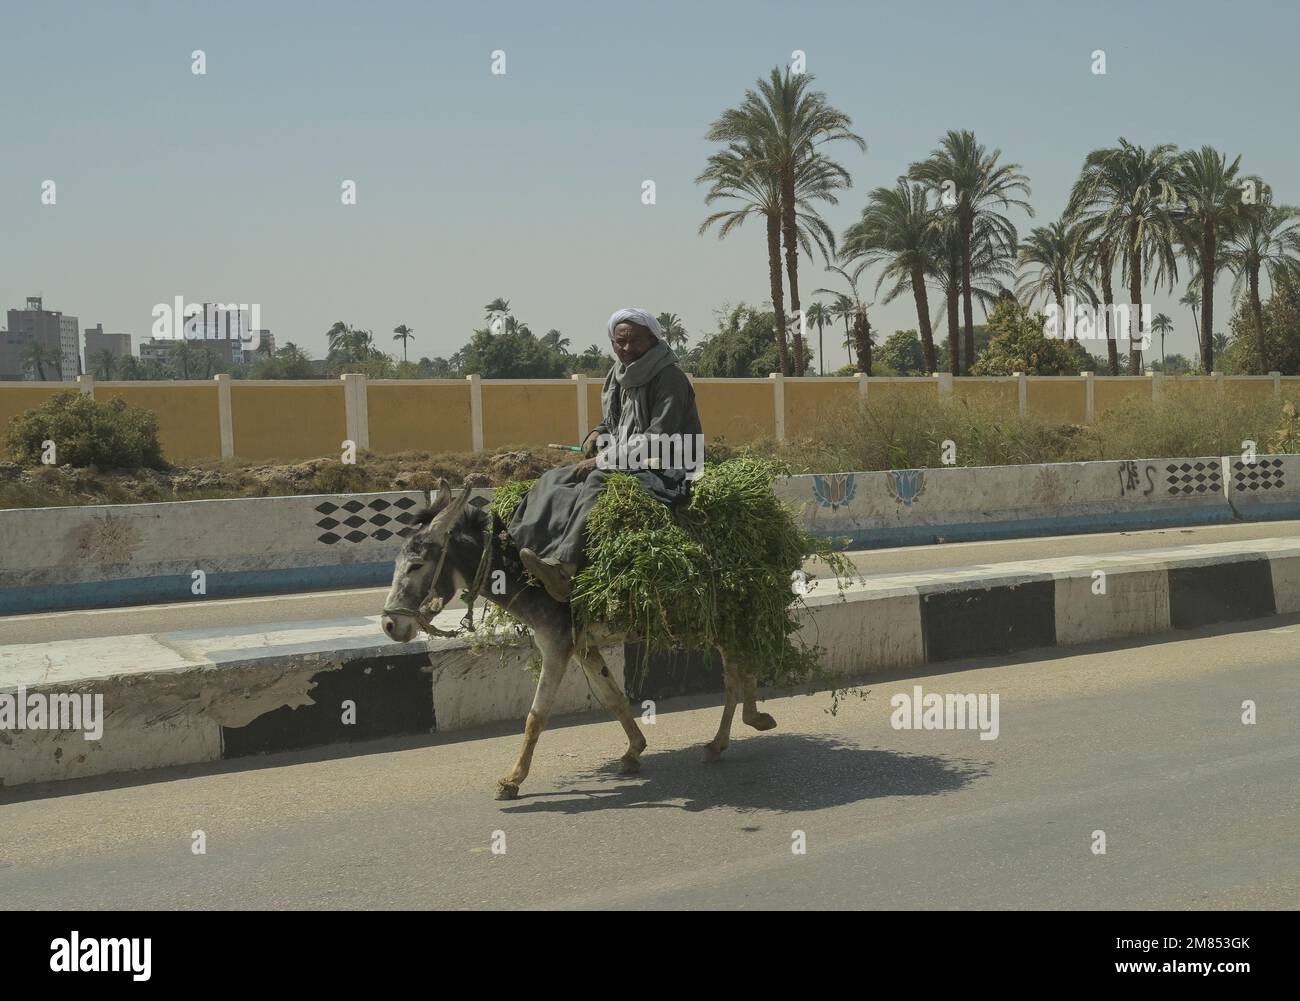 Straßenszene, Esel, Karren, Transport Grünfutter, Strasse 75 zwischen Luxor und Qina, Ägypten Stock Photo